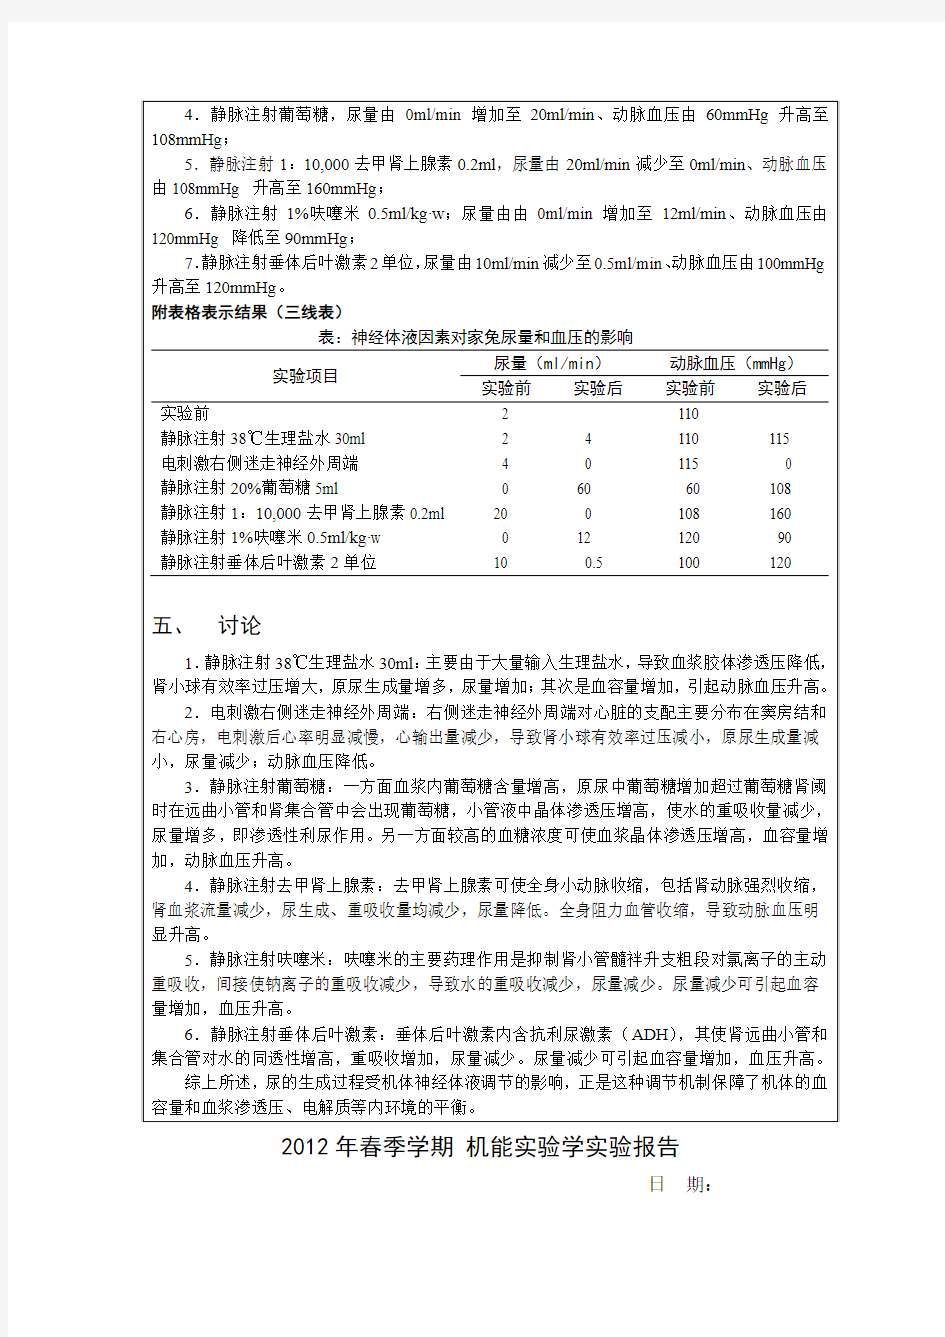 机能实验学实验报告书写格式示例20120423